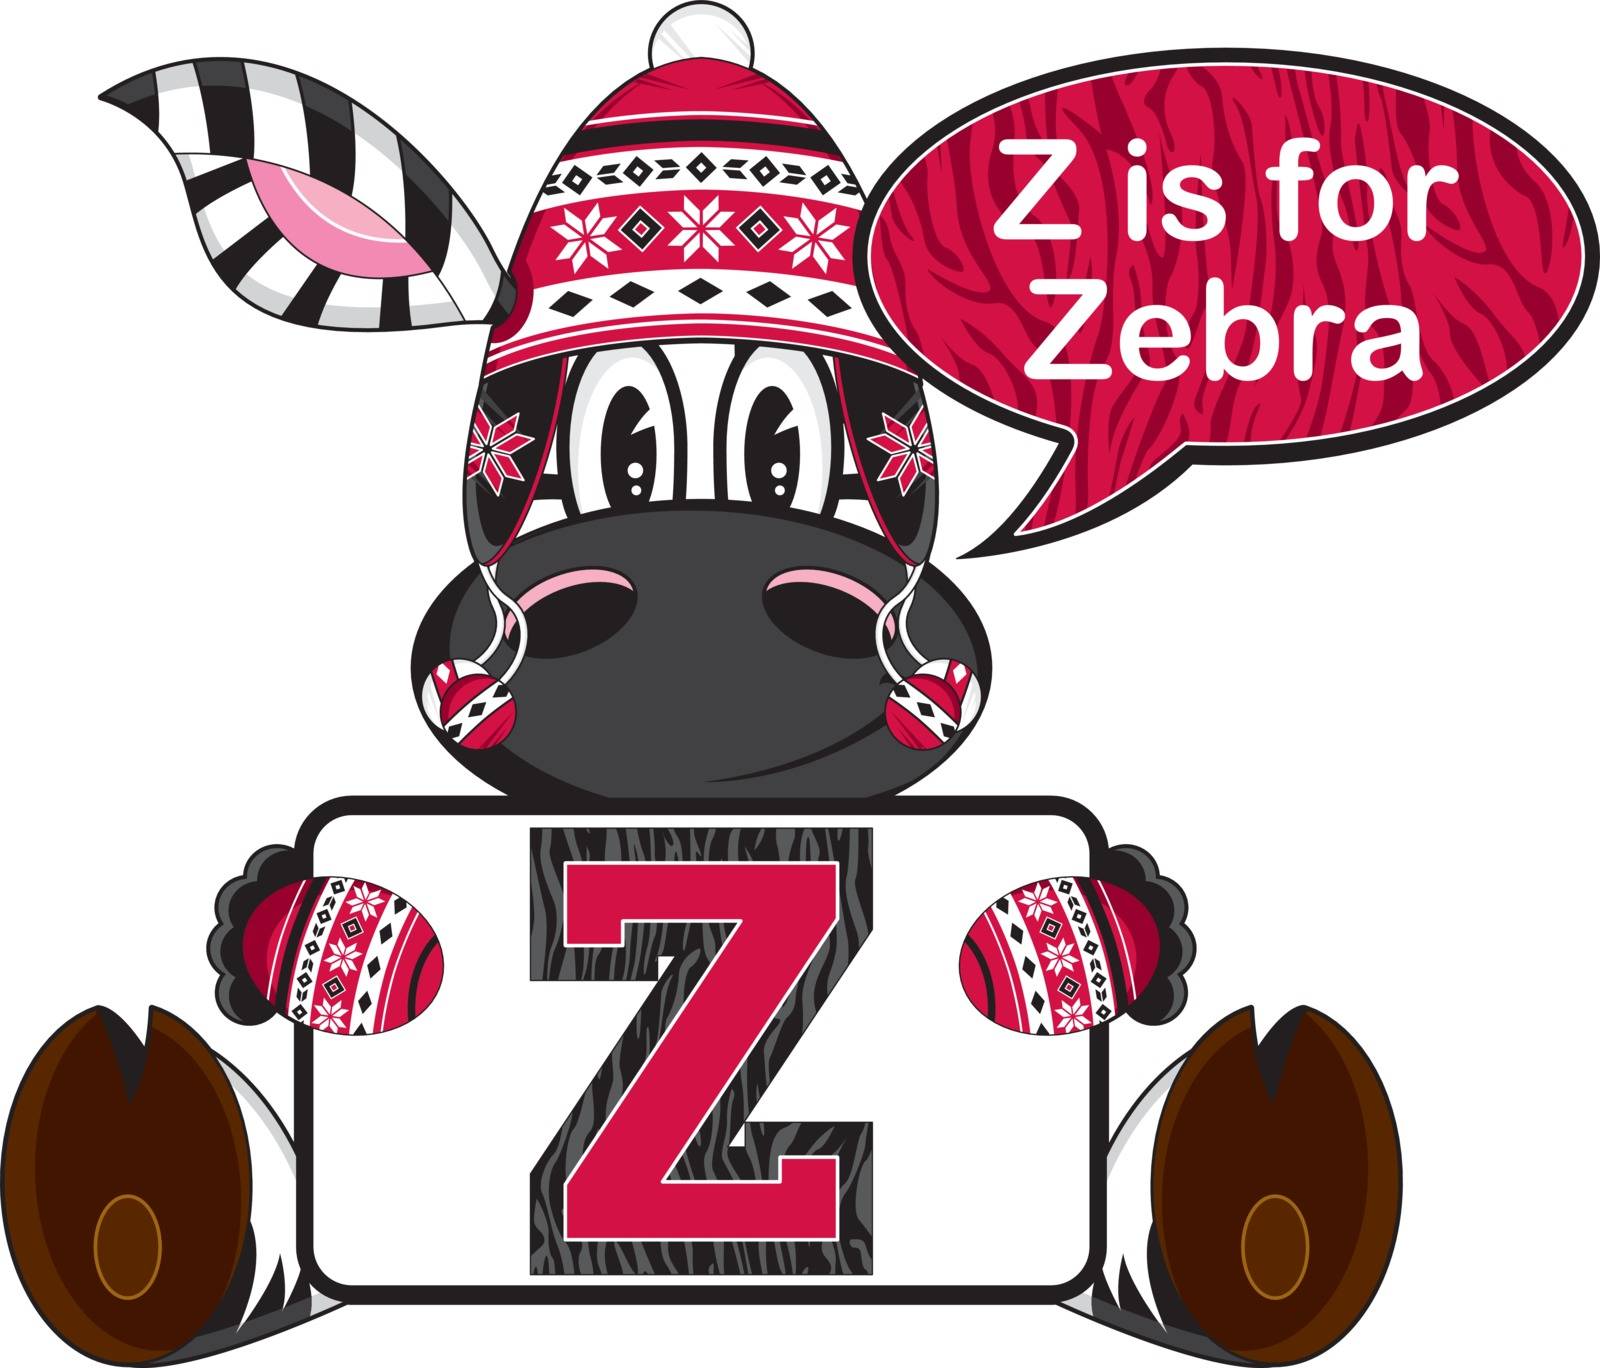 Z is for Zebra by markmurphycreative